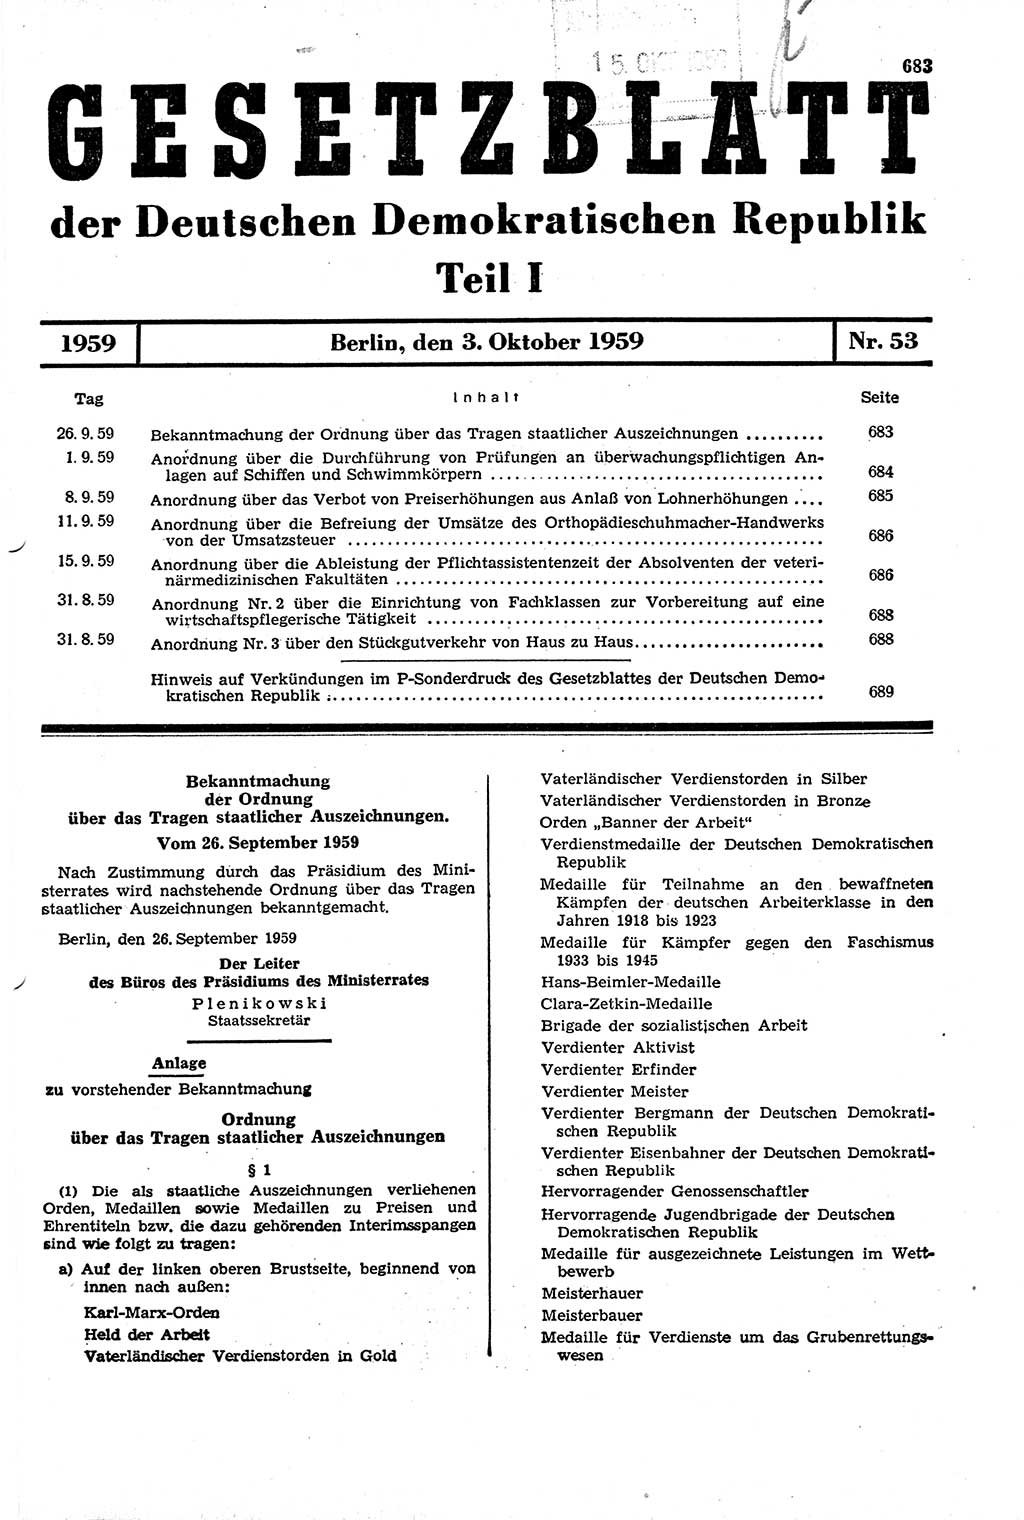 Gesetzblatt (GBl.) der Deutschen Demokratischen Republik (DDR) Teil Ⅰ 1959, Seite 683 (GBl. DDR Ⅰ 1959, S. 683)